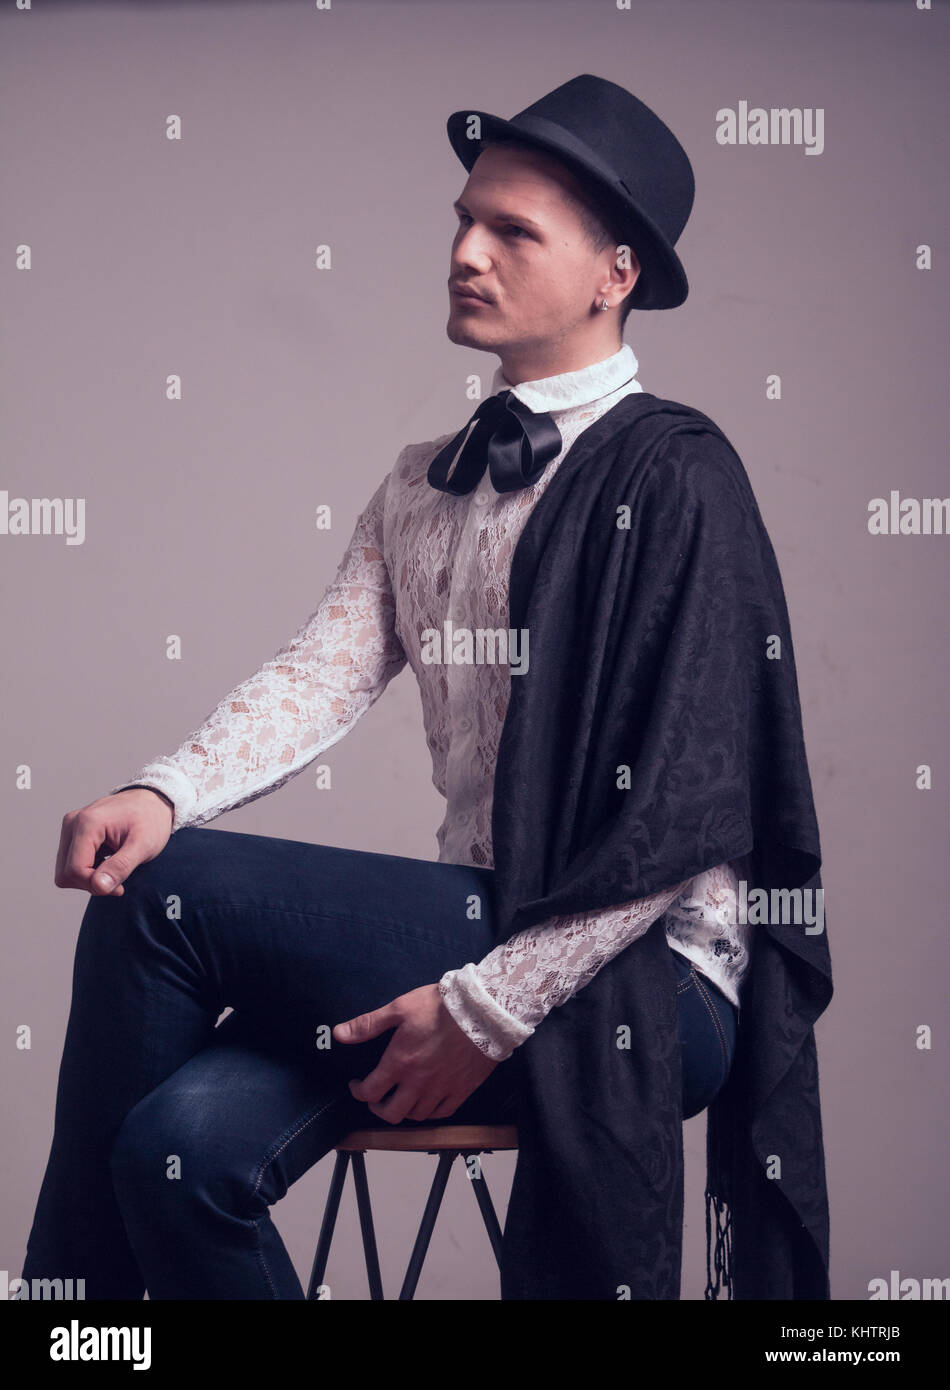 Un jeune homme de race blanche, gay gentelman, portant chemise dentelle, hat, portrait Banque D'Images